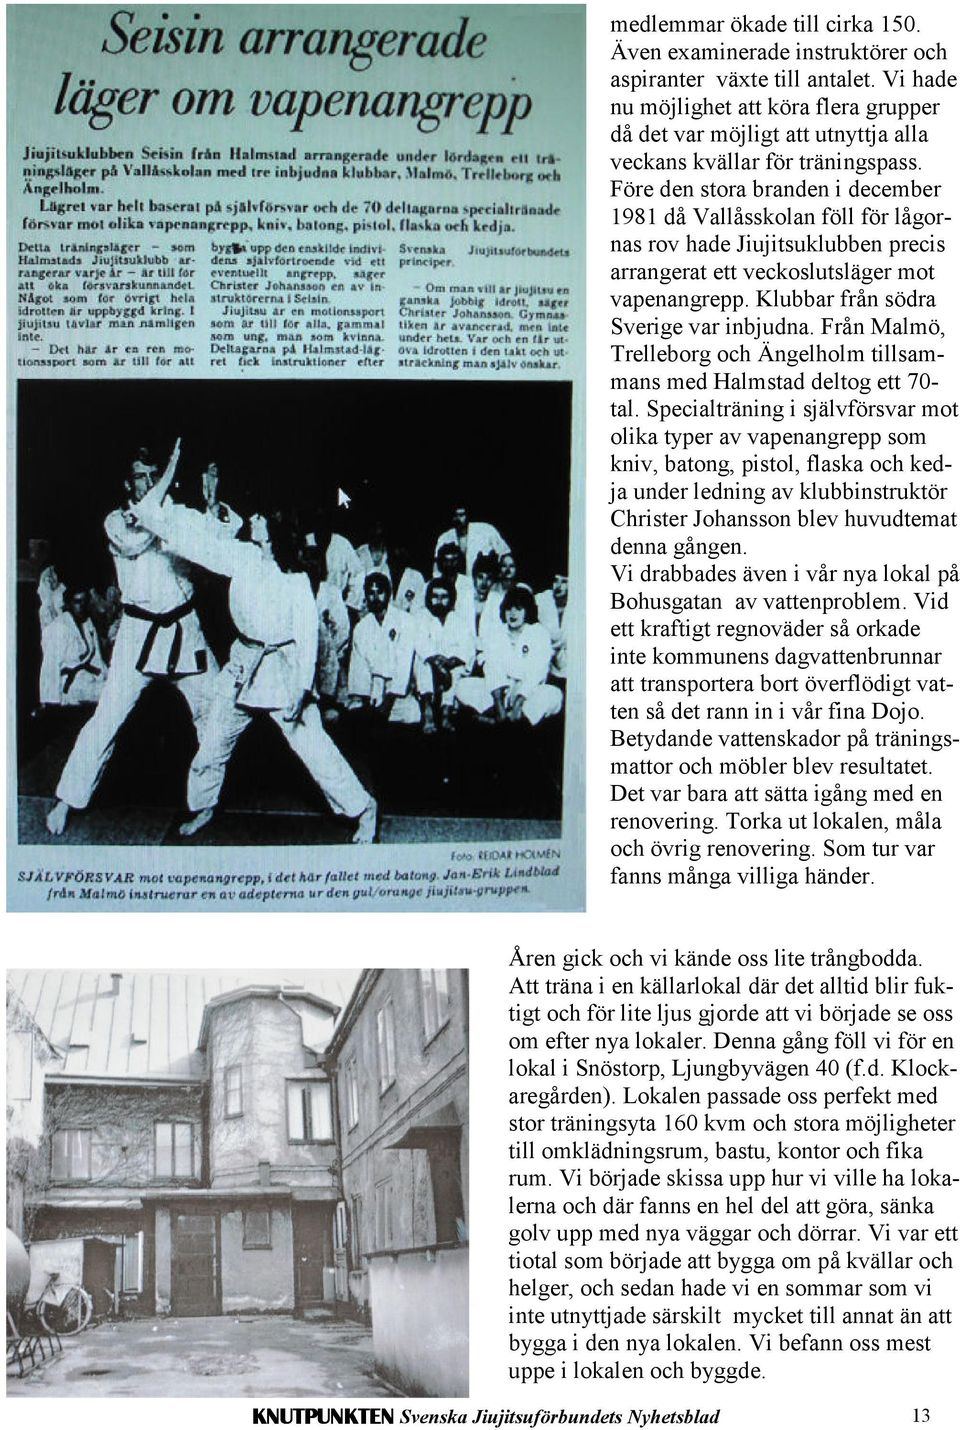 Före den stora branden i december 1981 då Vallåsskolan föll för lågornas rov hade Jiujitsuklubben precis arrangerat ett veckoslutsläger mot vapenangrepp. Klubbar från södra Sverige var inbjudna.